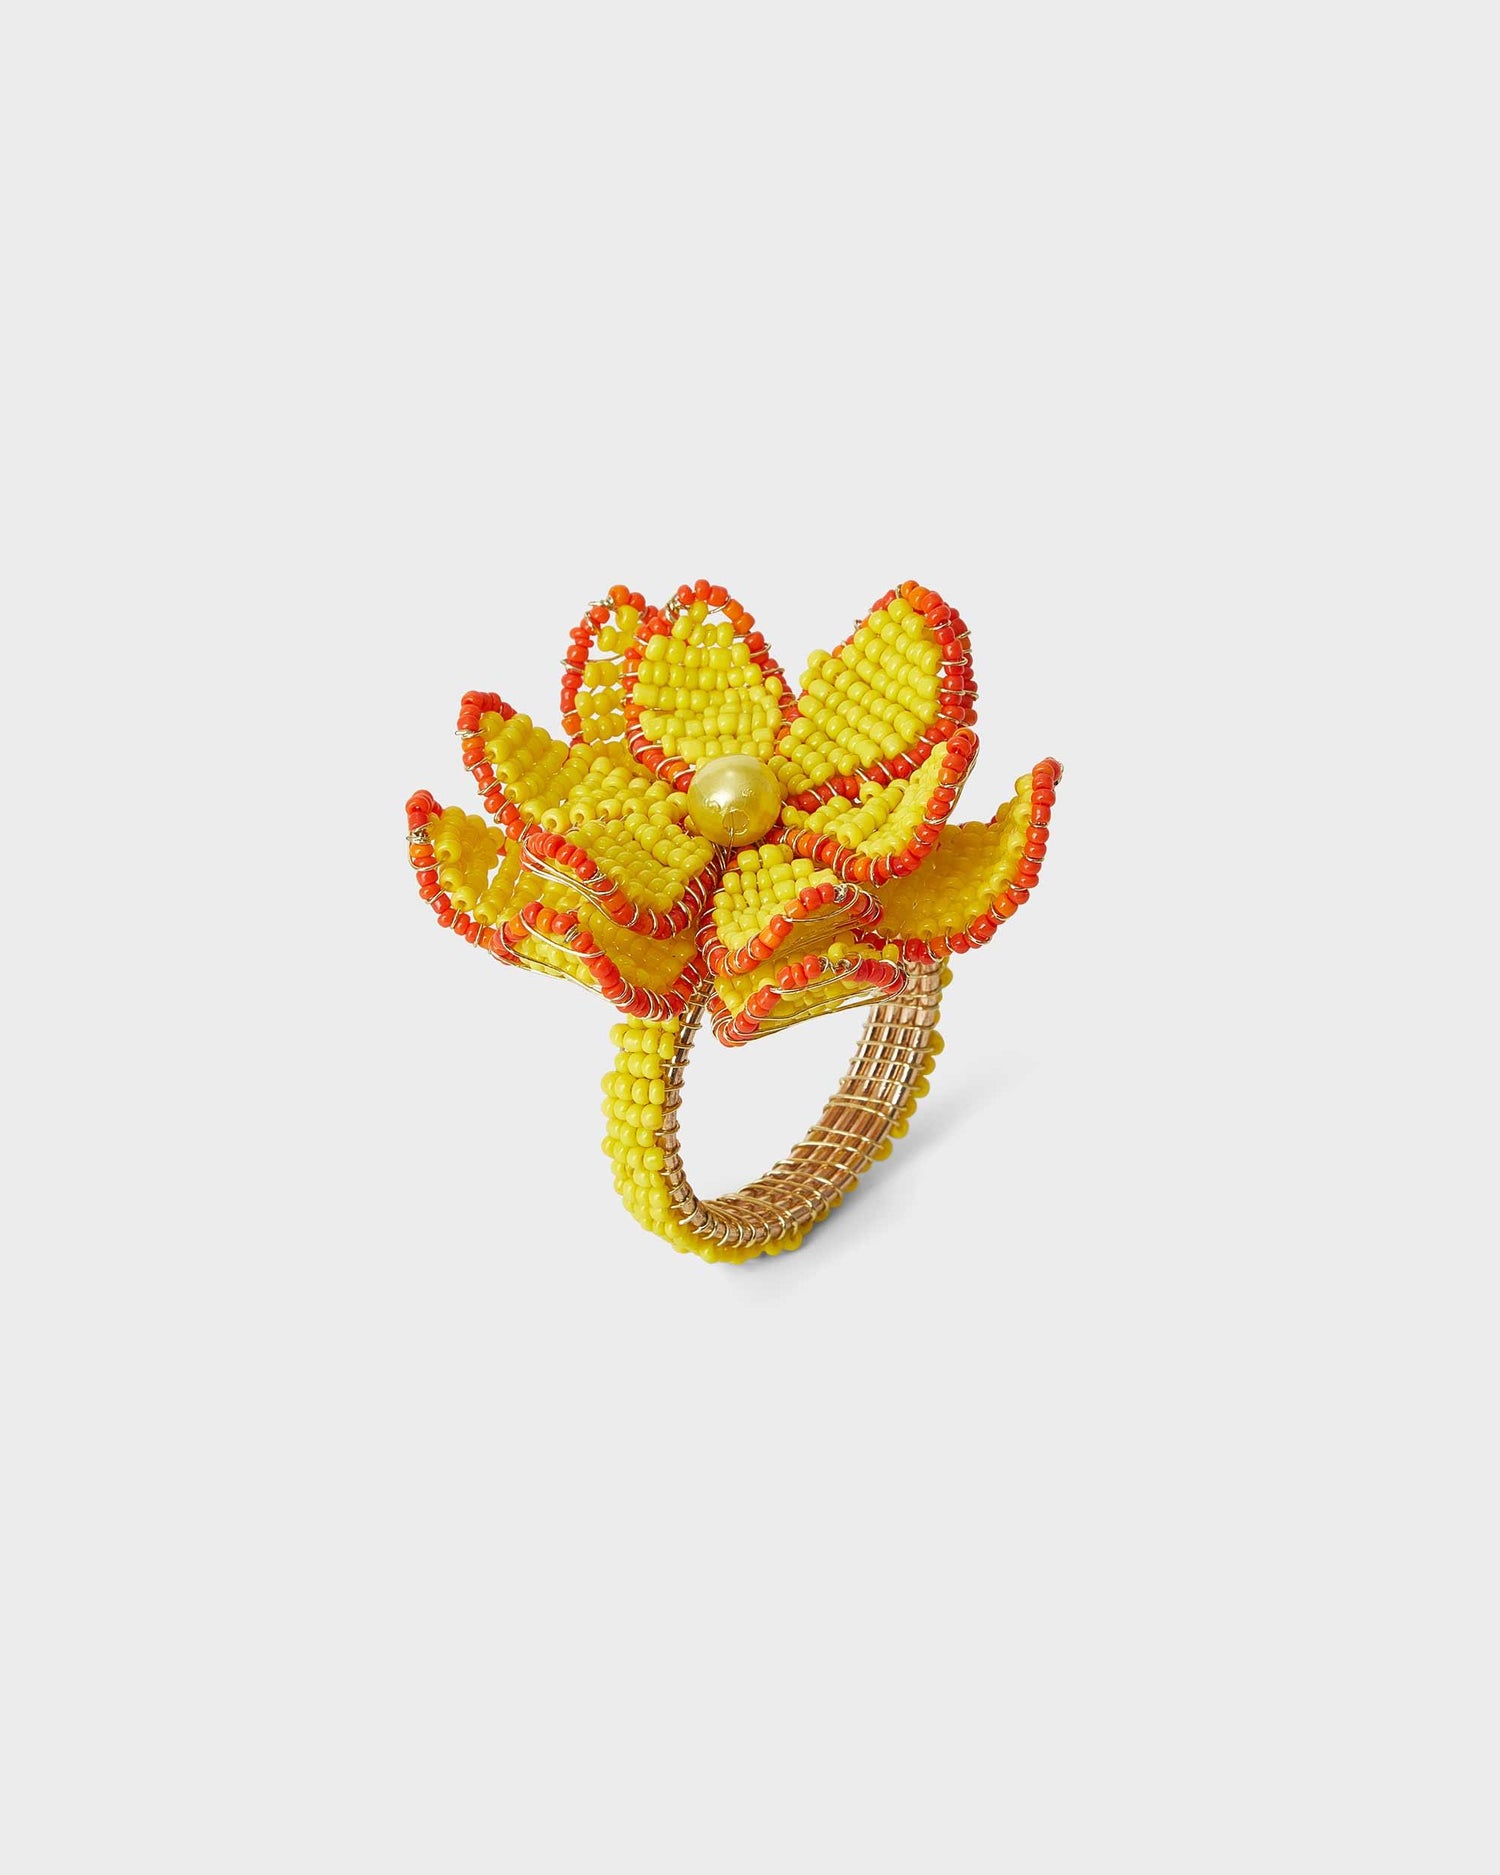 Napkin Ring - Yellow & Orange Flower - Von Home